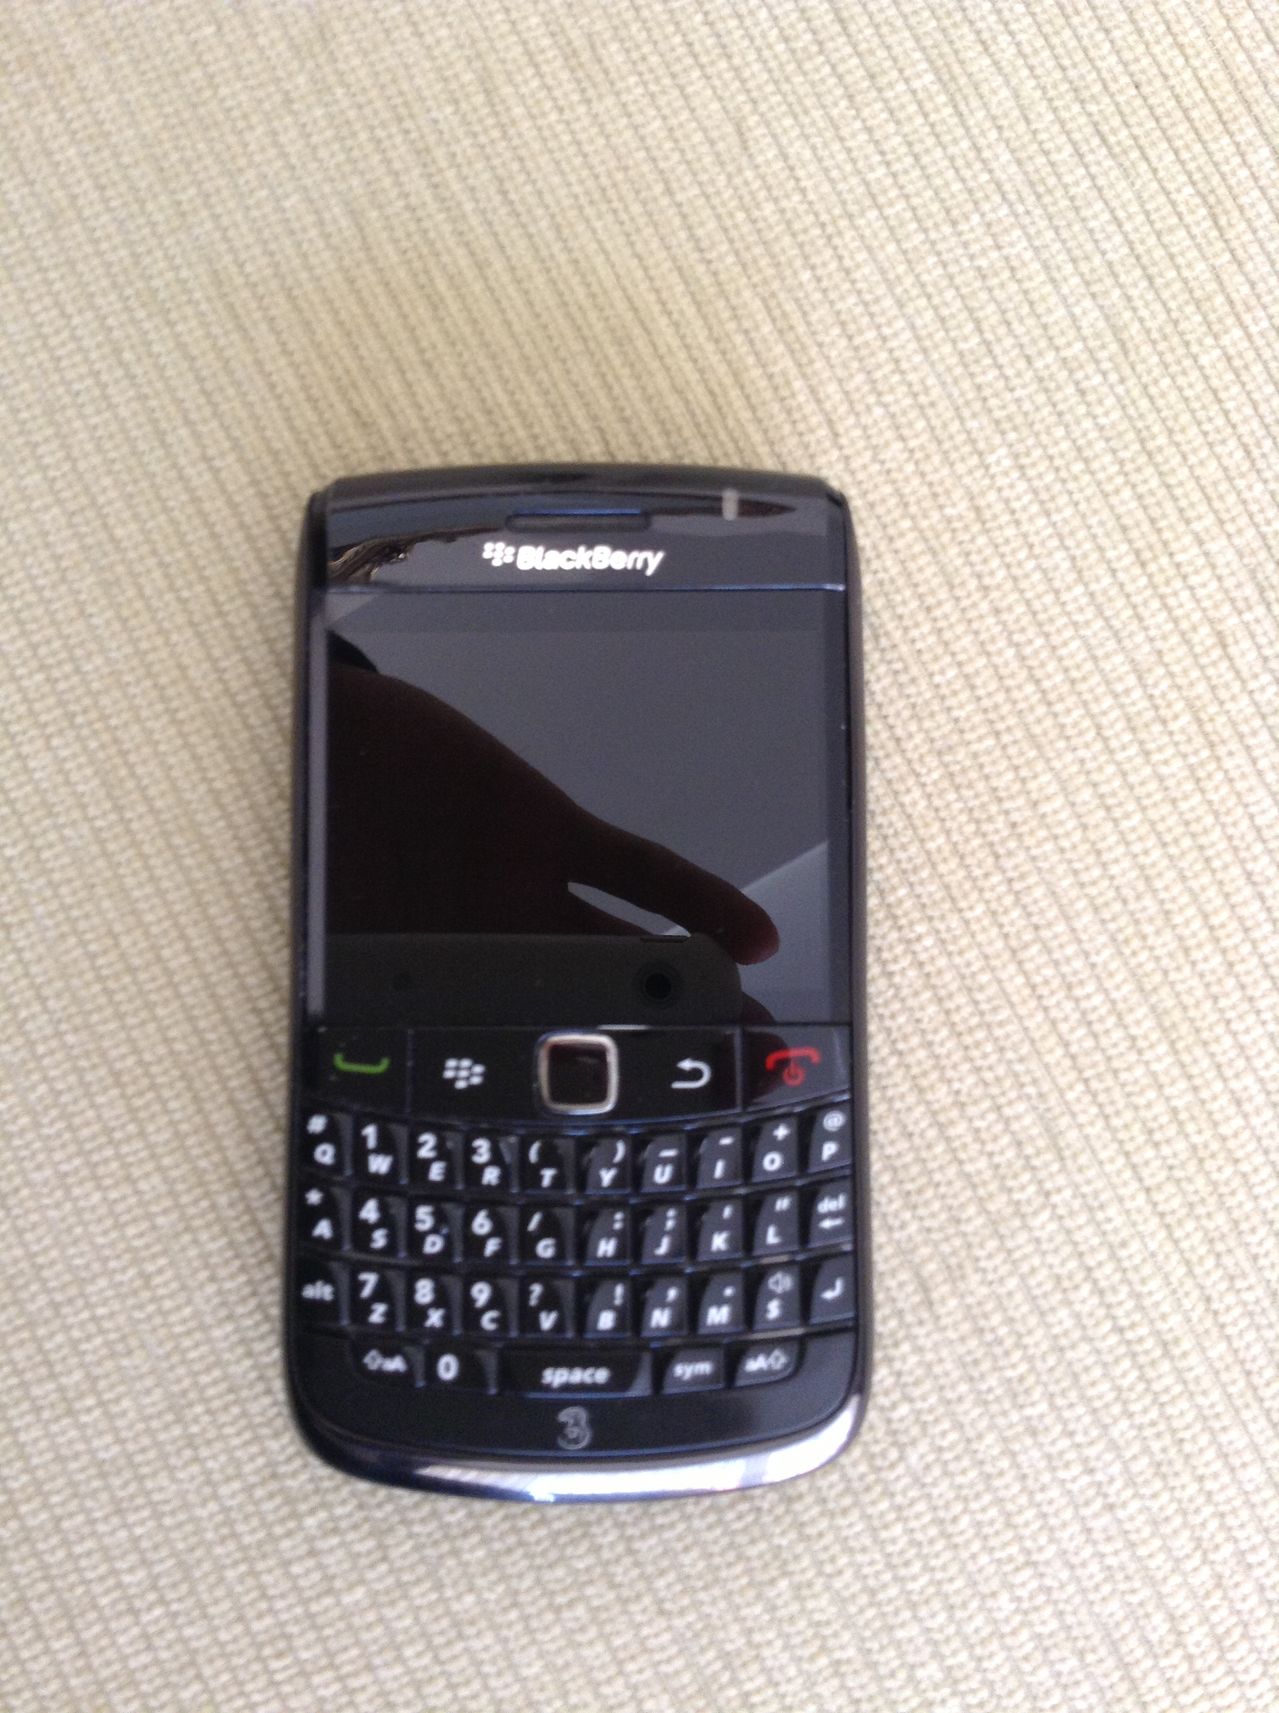  Satılık Blackberry Bold 9780 Siyah